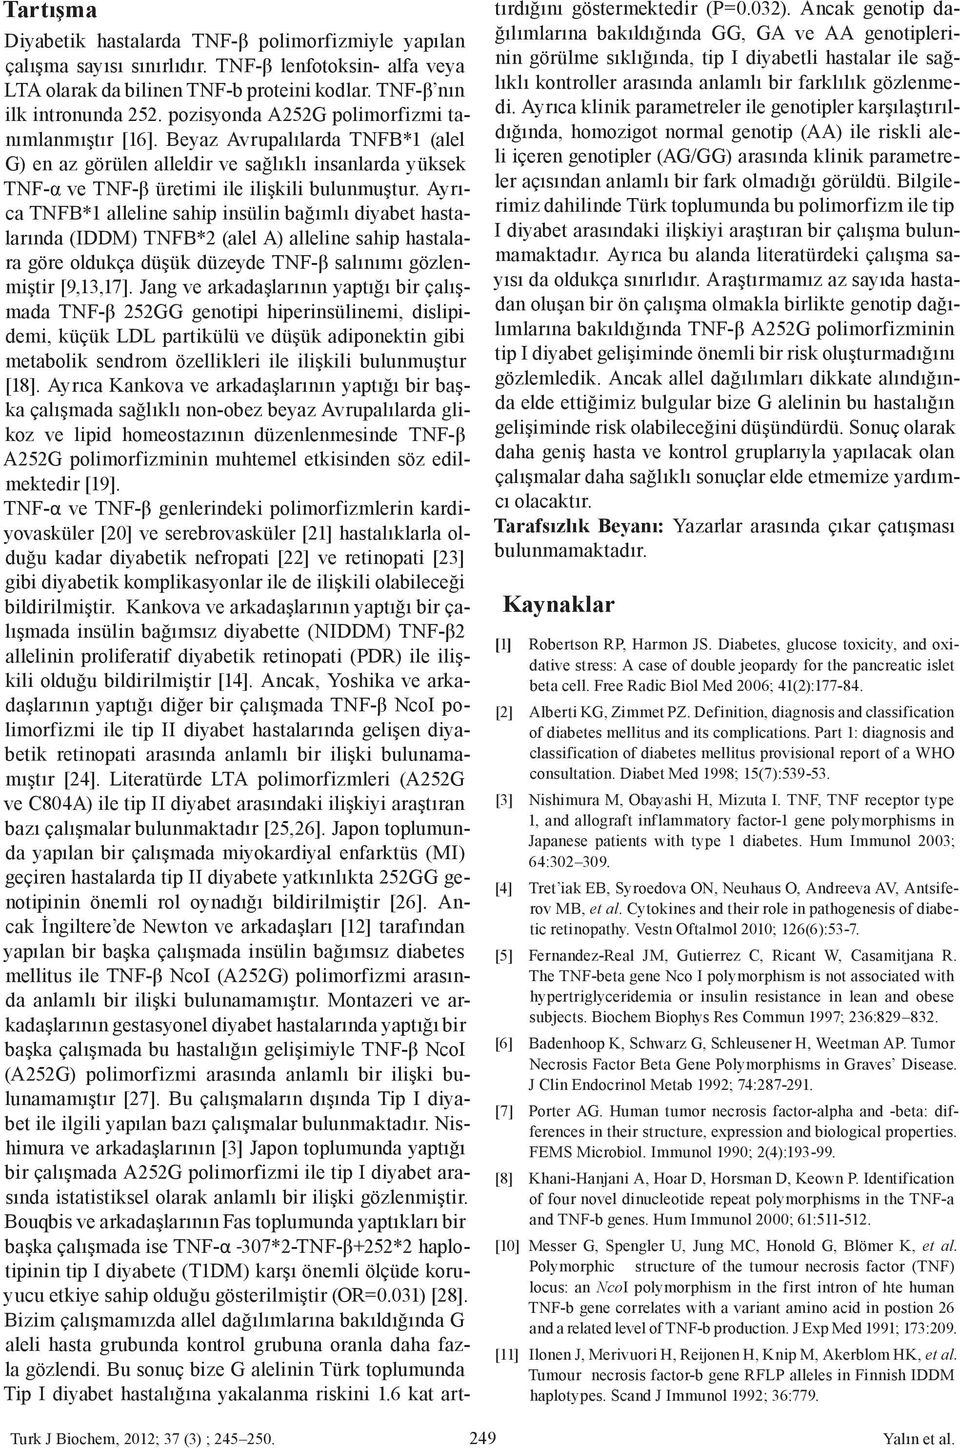 Ayrıca TNFB*1 alleline sahip insülin bağımlı diyabet hastalarında (IDDM) TNFB*2 (alel A) alleline sahip hastalara göre oldukça düşük düzeyde TNF-β salınımı gözlenmiştir [9,13,17].